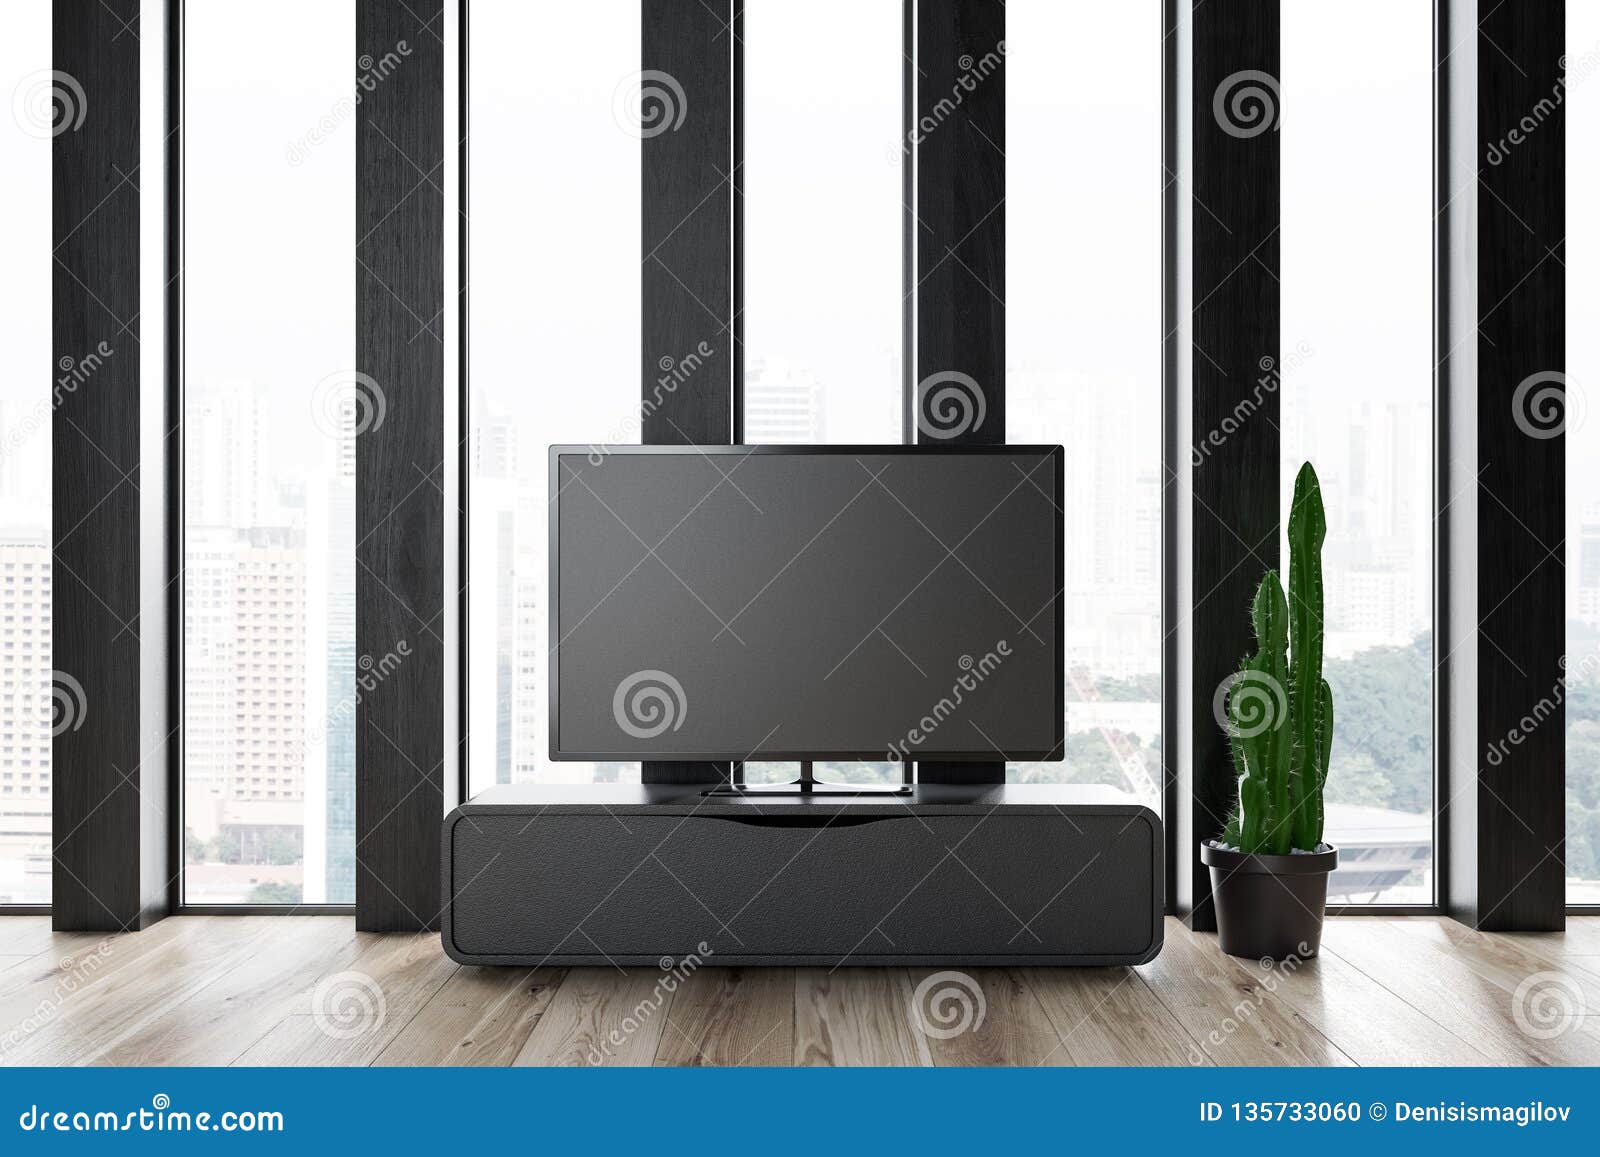 Tv Set In Dark Wooden Living Room Interior Stock Illustration